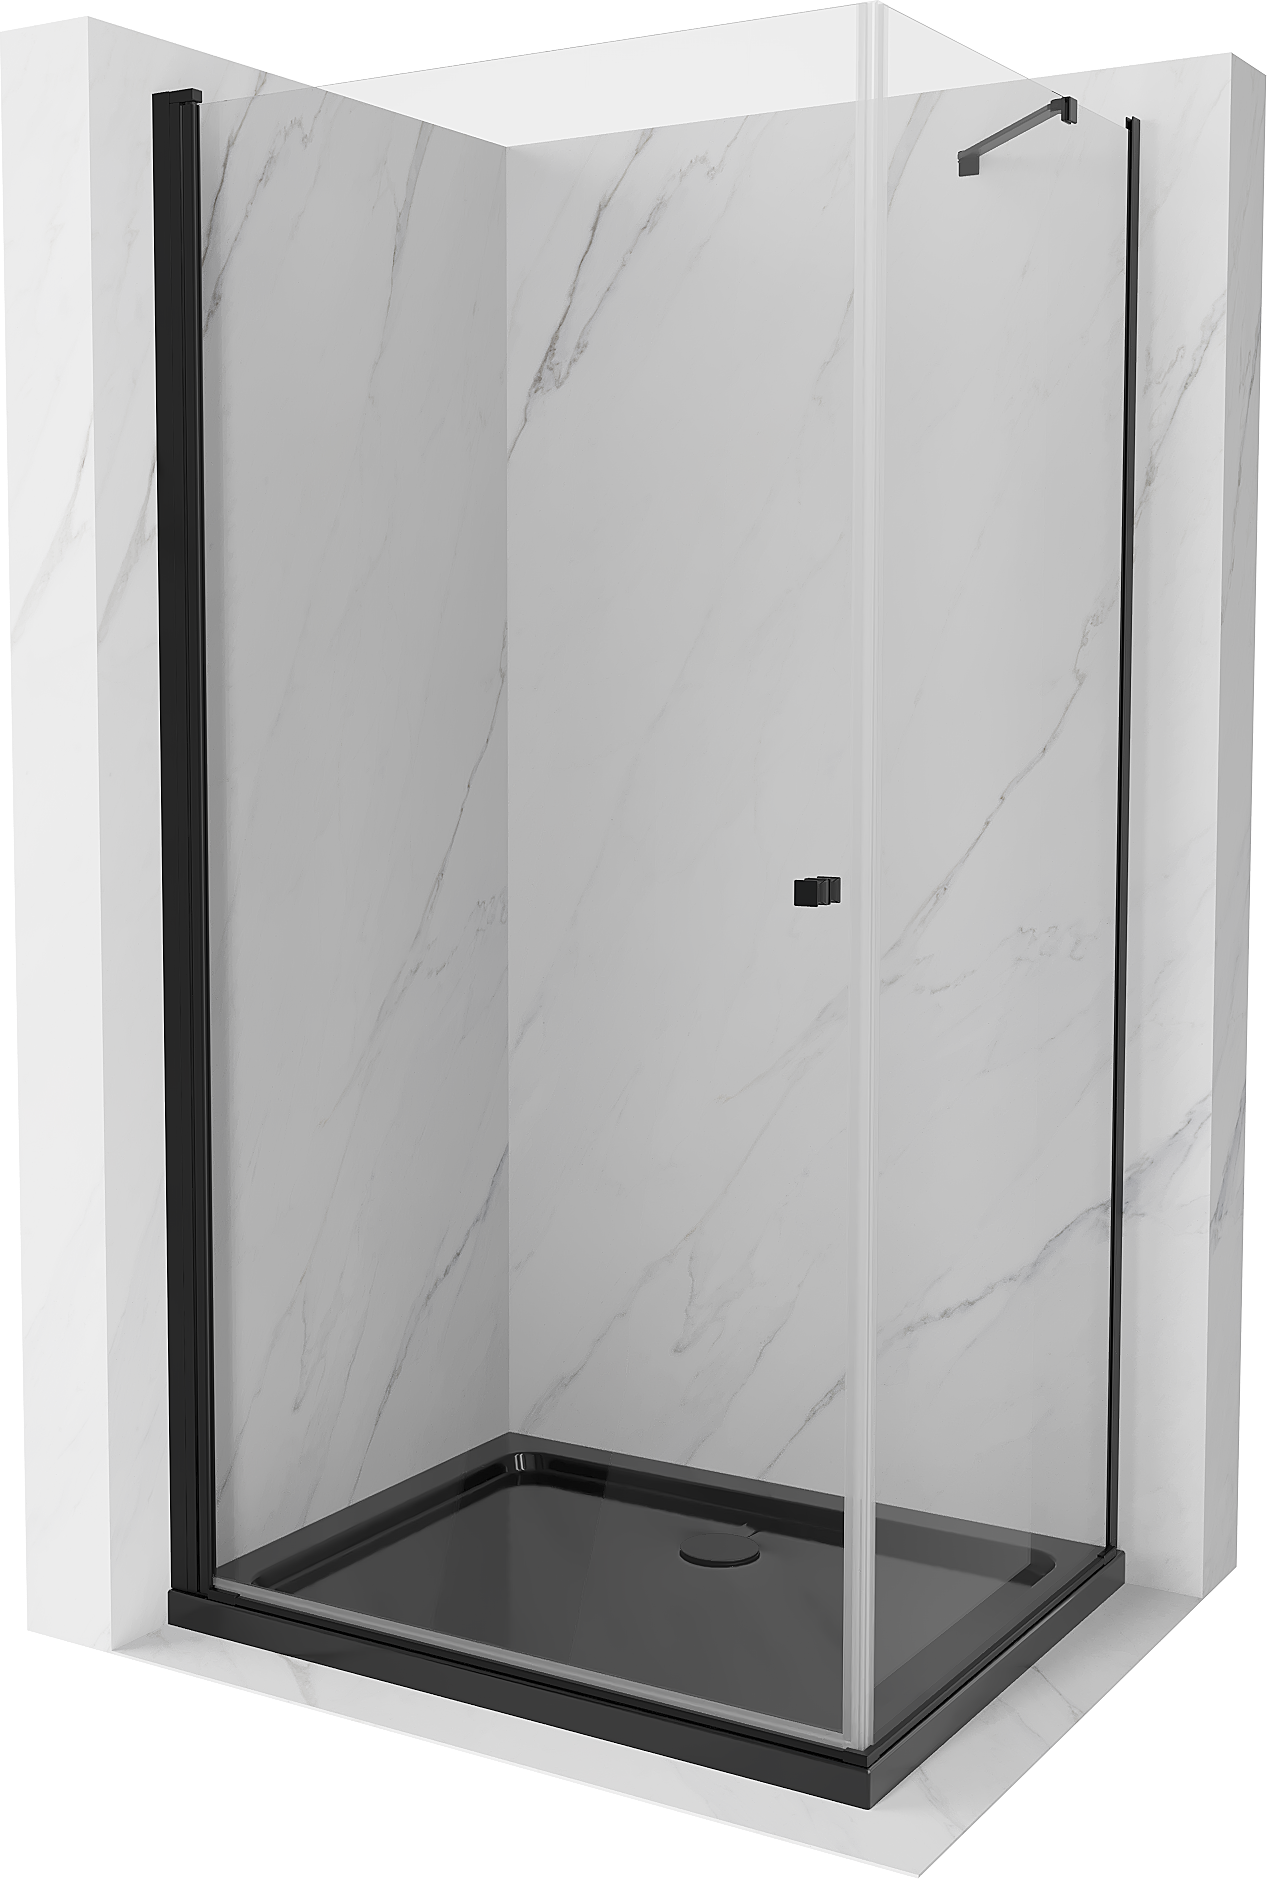 Mexen Pretoria kabina prysznicowa uchylna 90 x 110 cm, transparent, czarna + brodzik Flat, czarny - 852-090-110-70-00-4070B